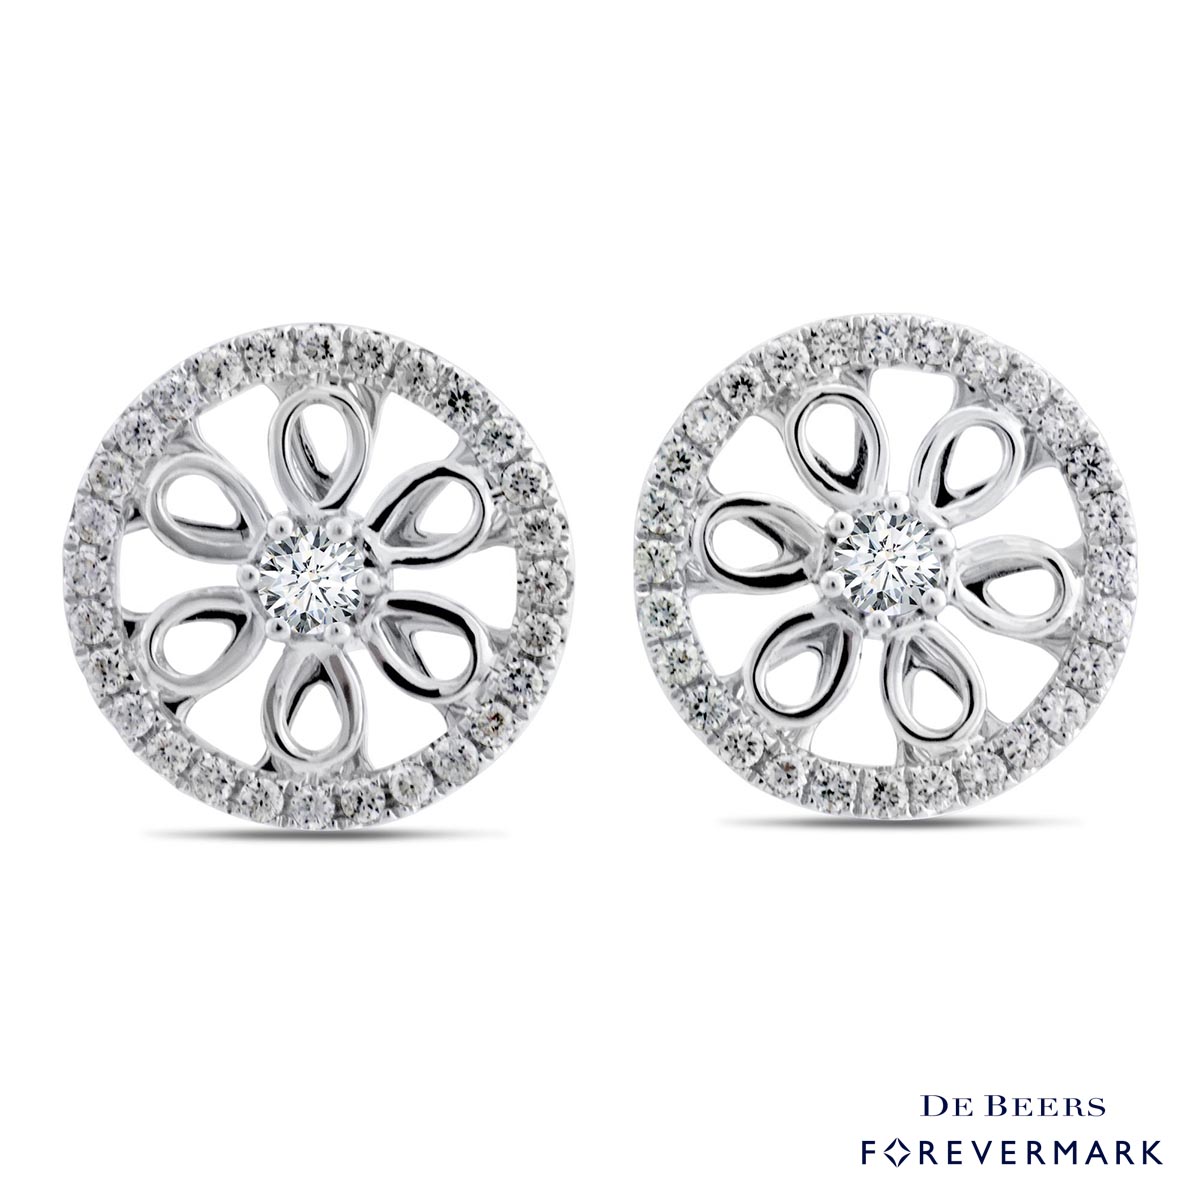 De Beers Forevermark Diamond Earrings in 18kt White Gold (1ct tw)